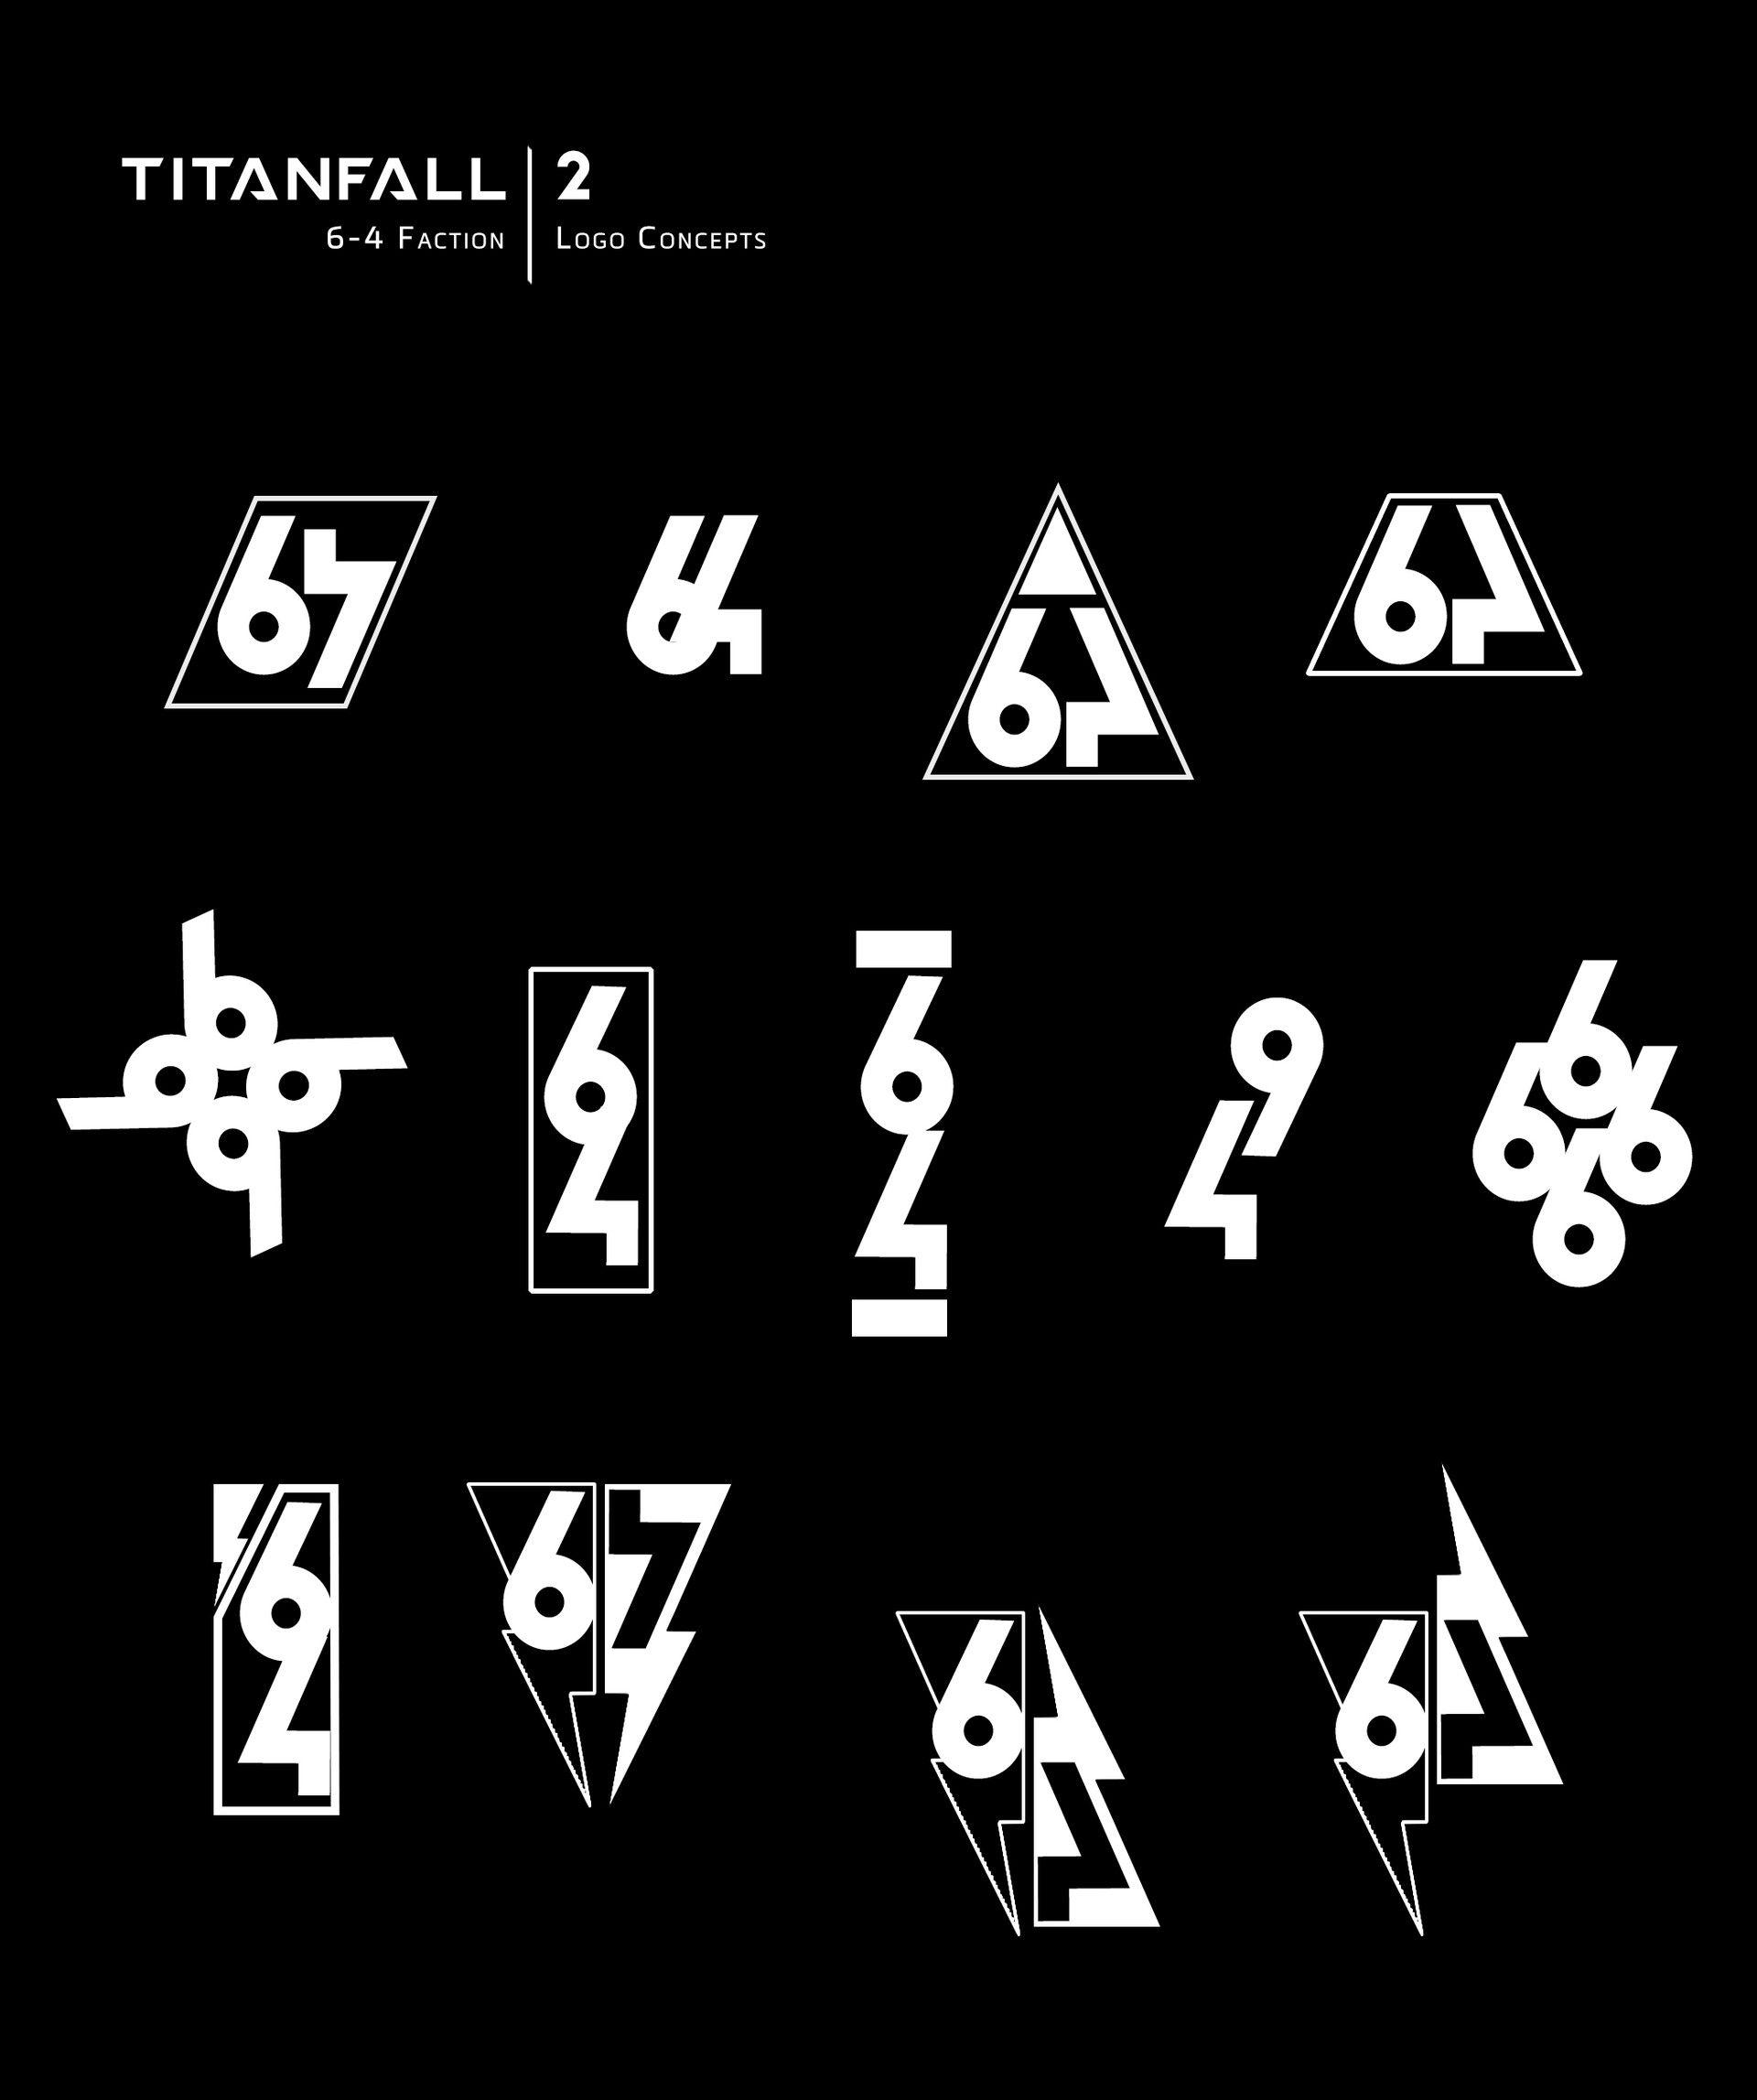 Black and White Titanfall Logo - Titanfall 2 iconography, Brad Allen